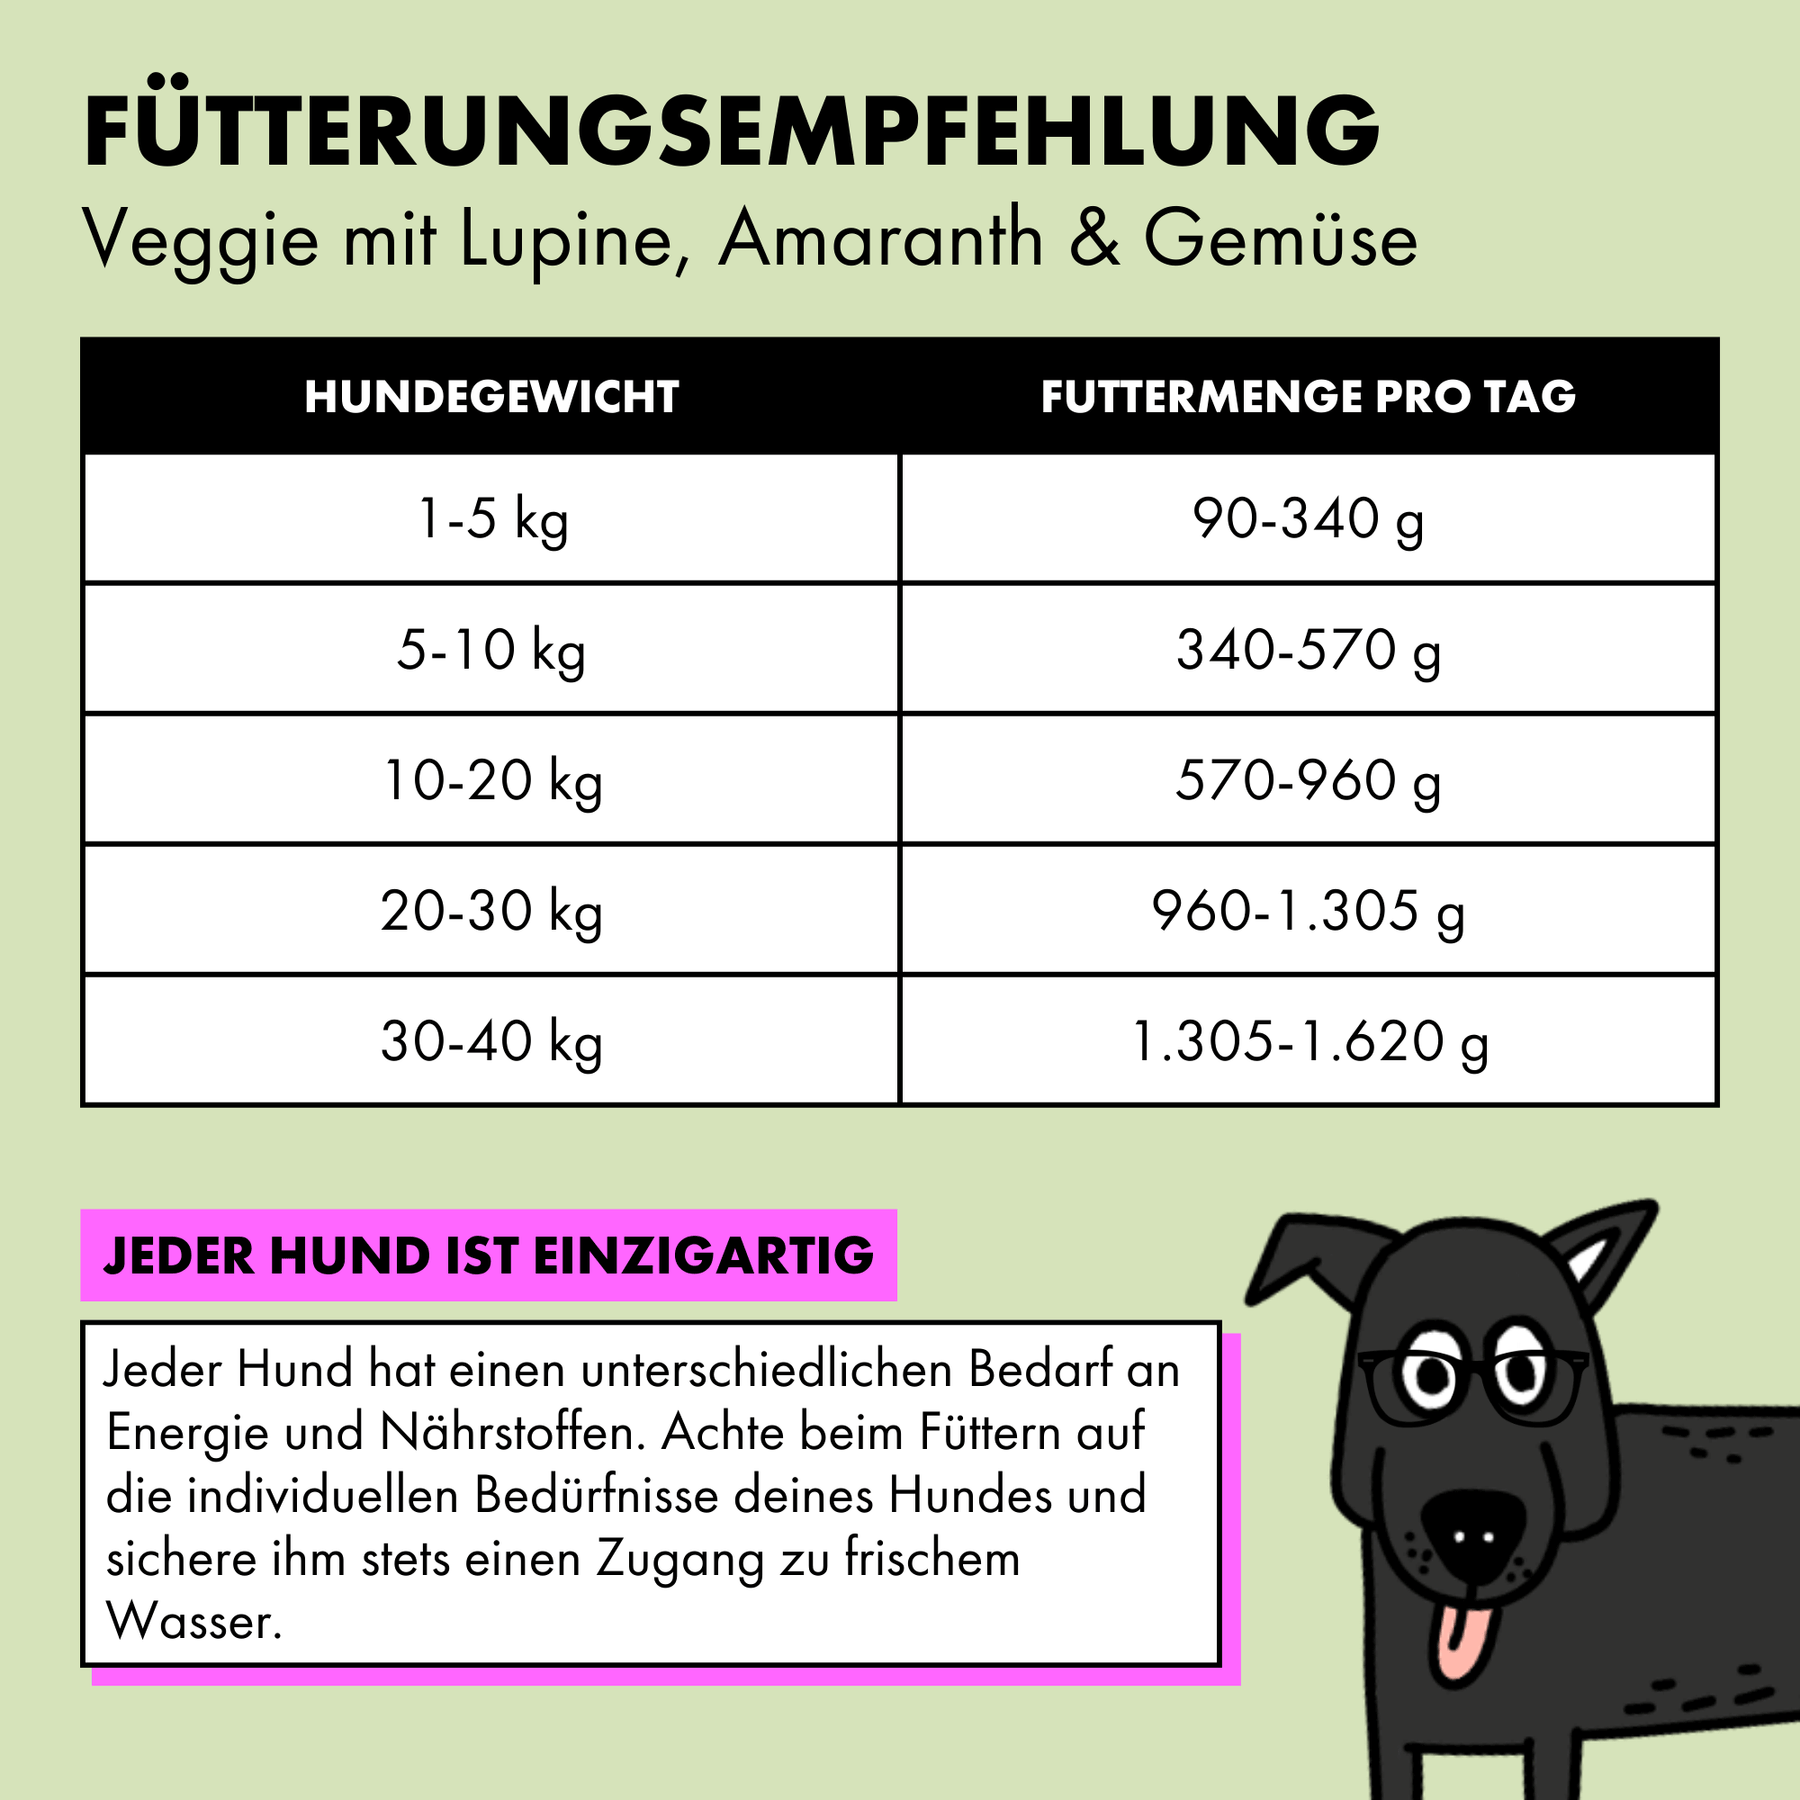 Jede Sorte des STRAYZ Futters hat eine unterschiedliche Fütterungsempfehlung. Ein 10 kg schwerer Hund braucht ca. 570 g Futter am Tag.